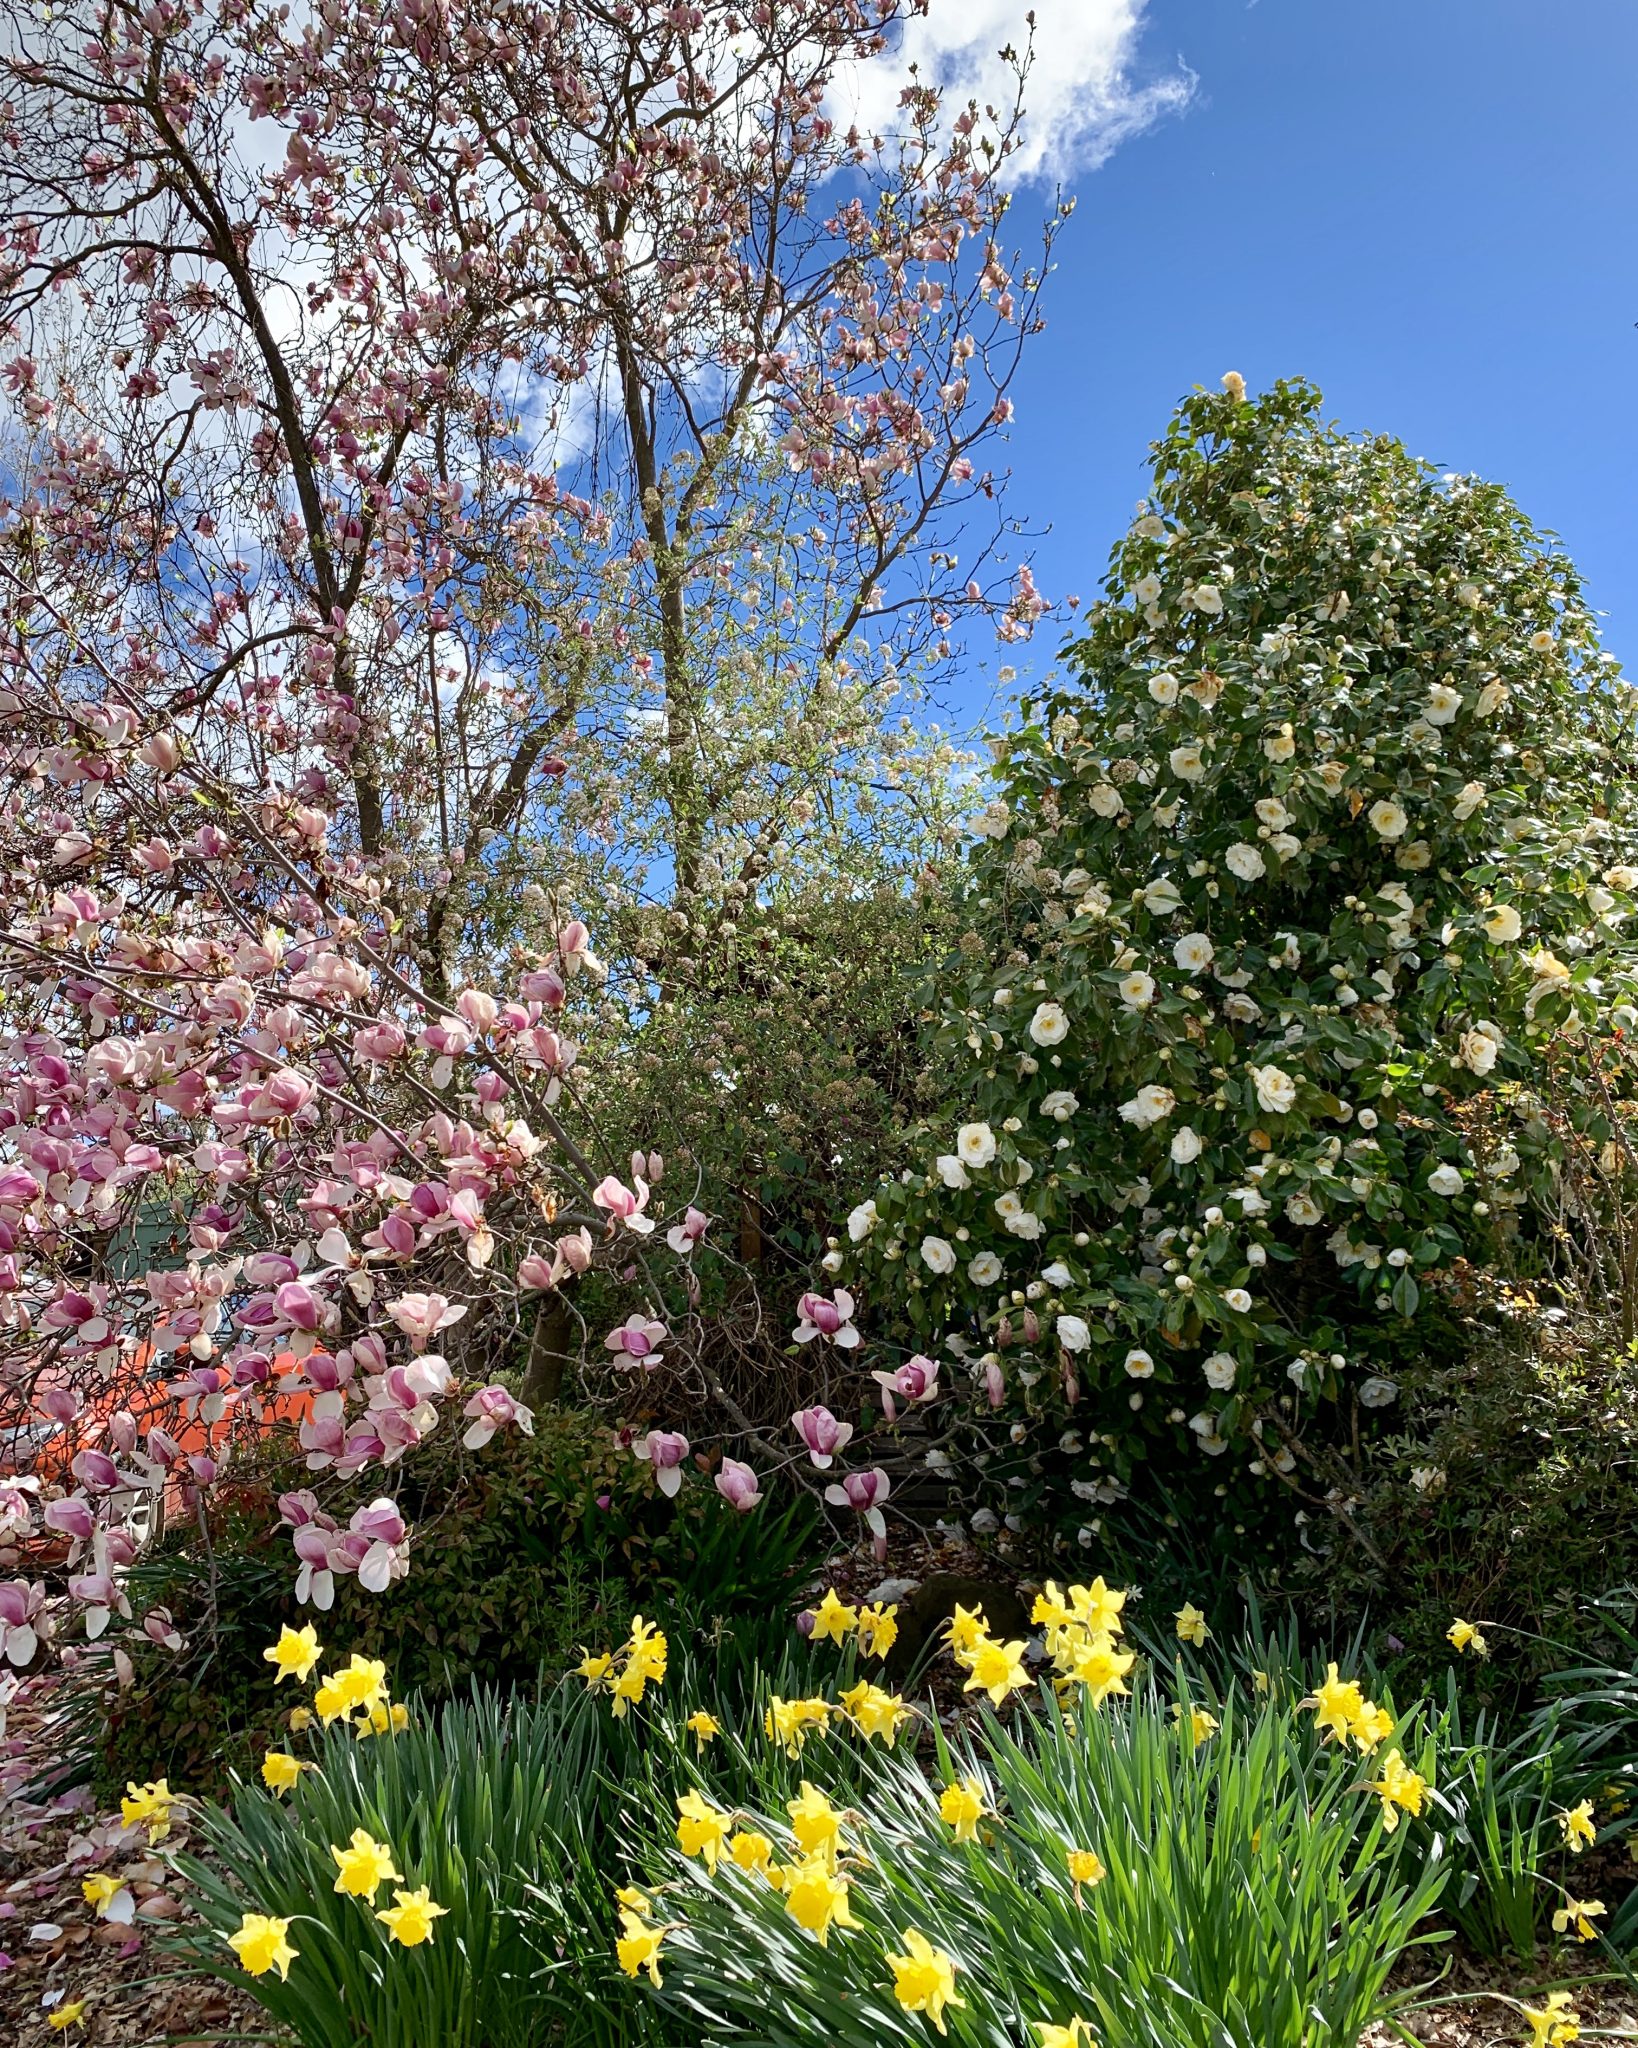 Spring colour in the garden